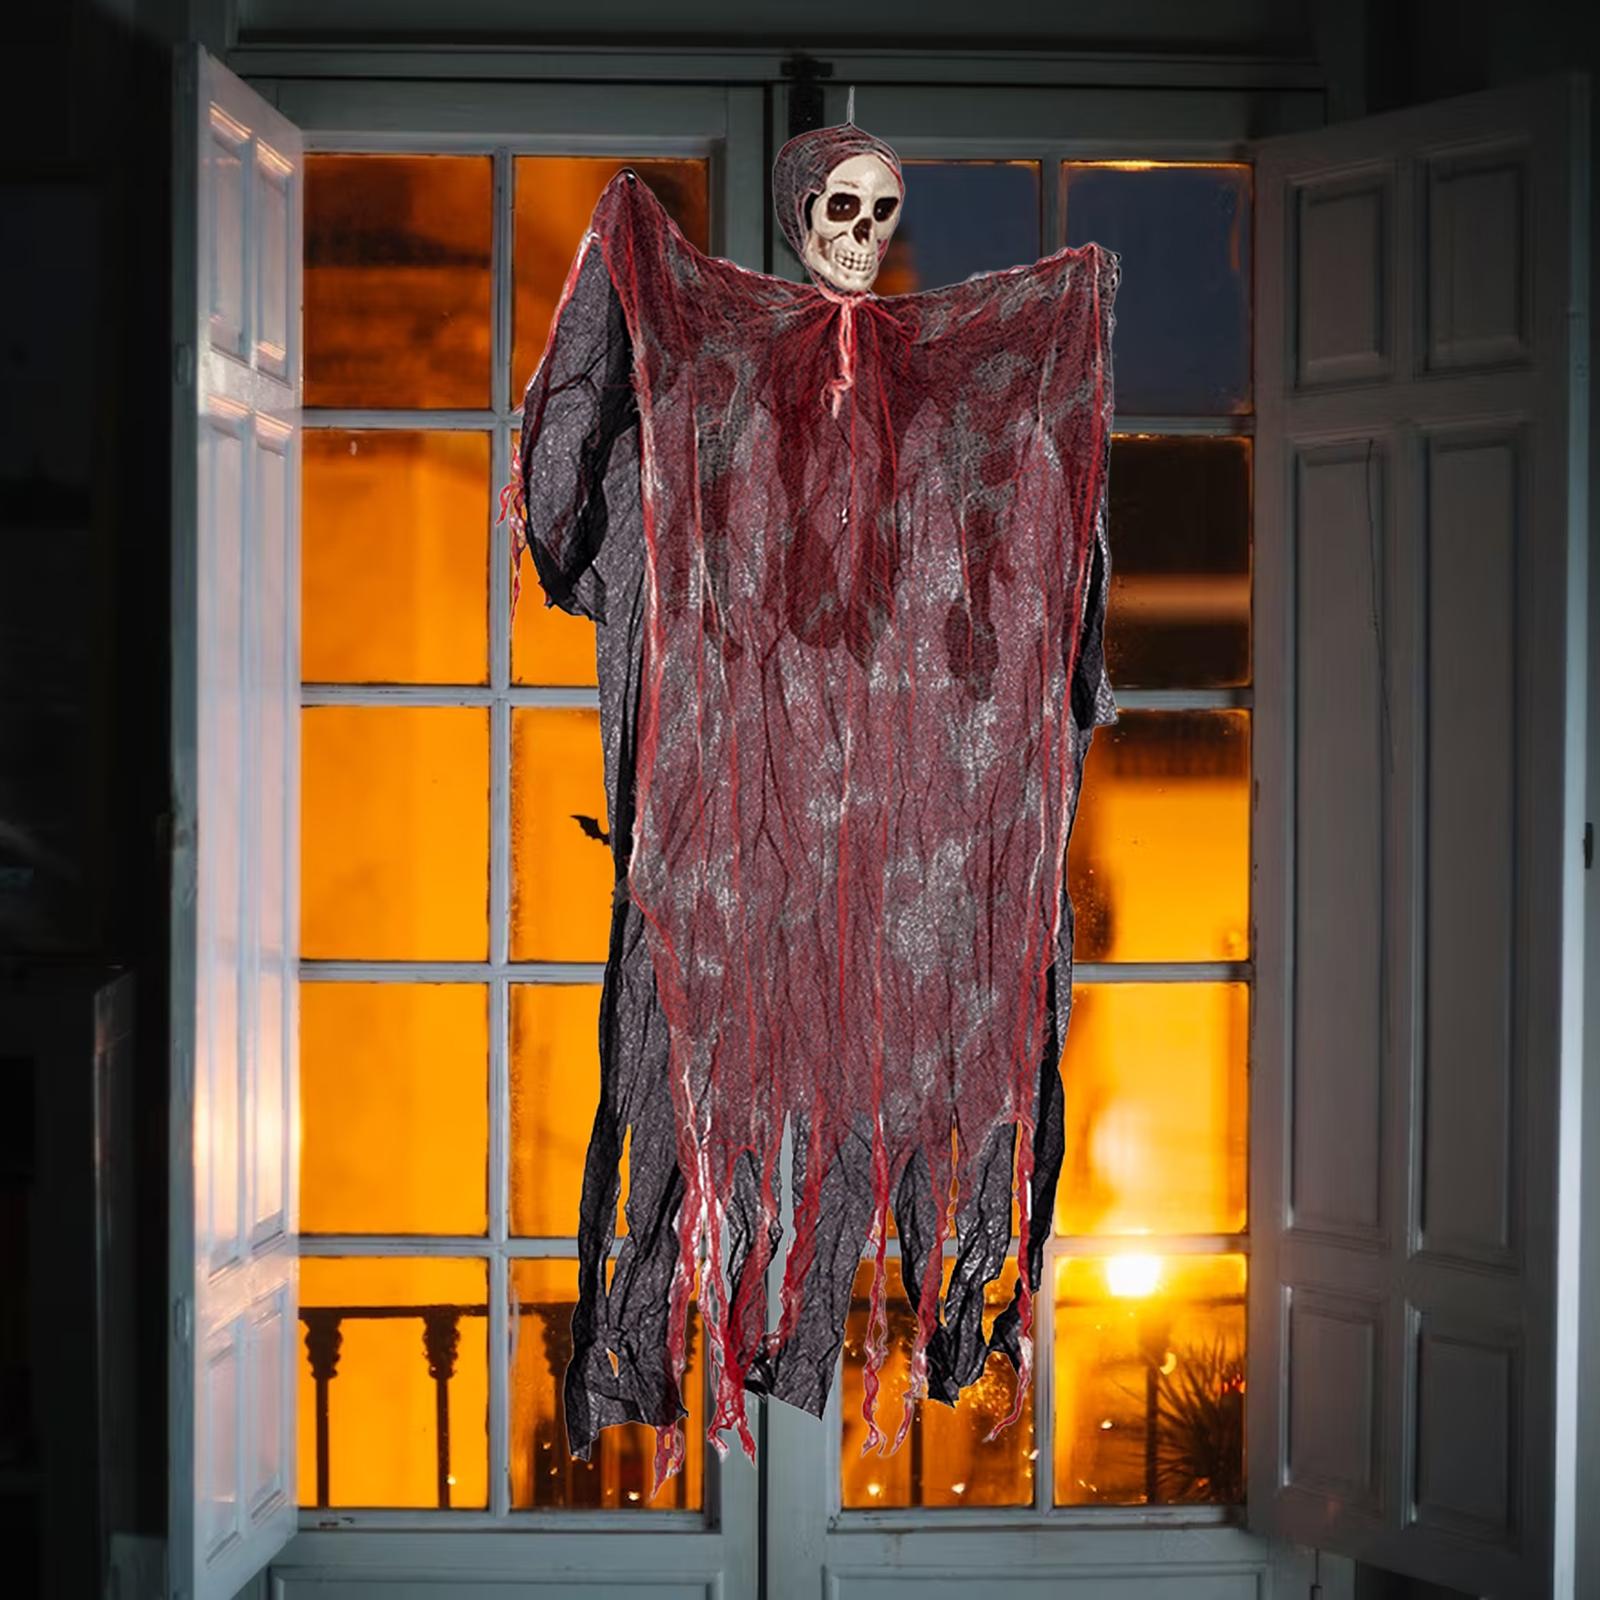 Halloween Hanging Skeleton Props Scary Decoration for Front Door Yard Indoor